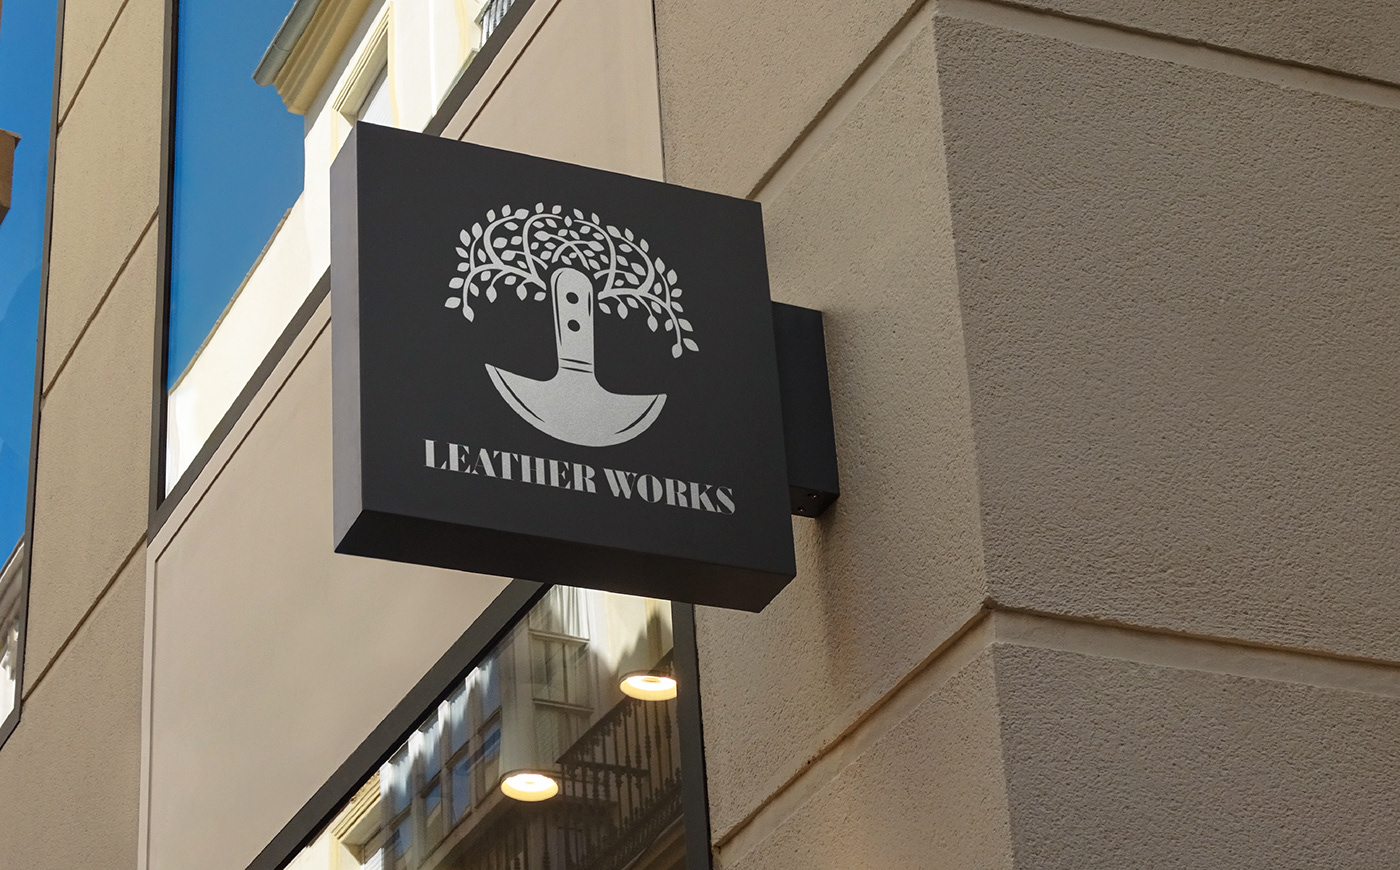 Brand Design brand identity branding  clothing brand leather logo logo designer Logotype typography   visual identity